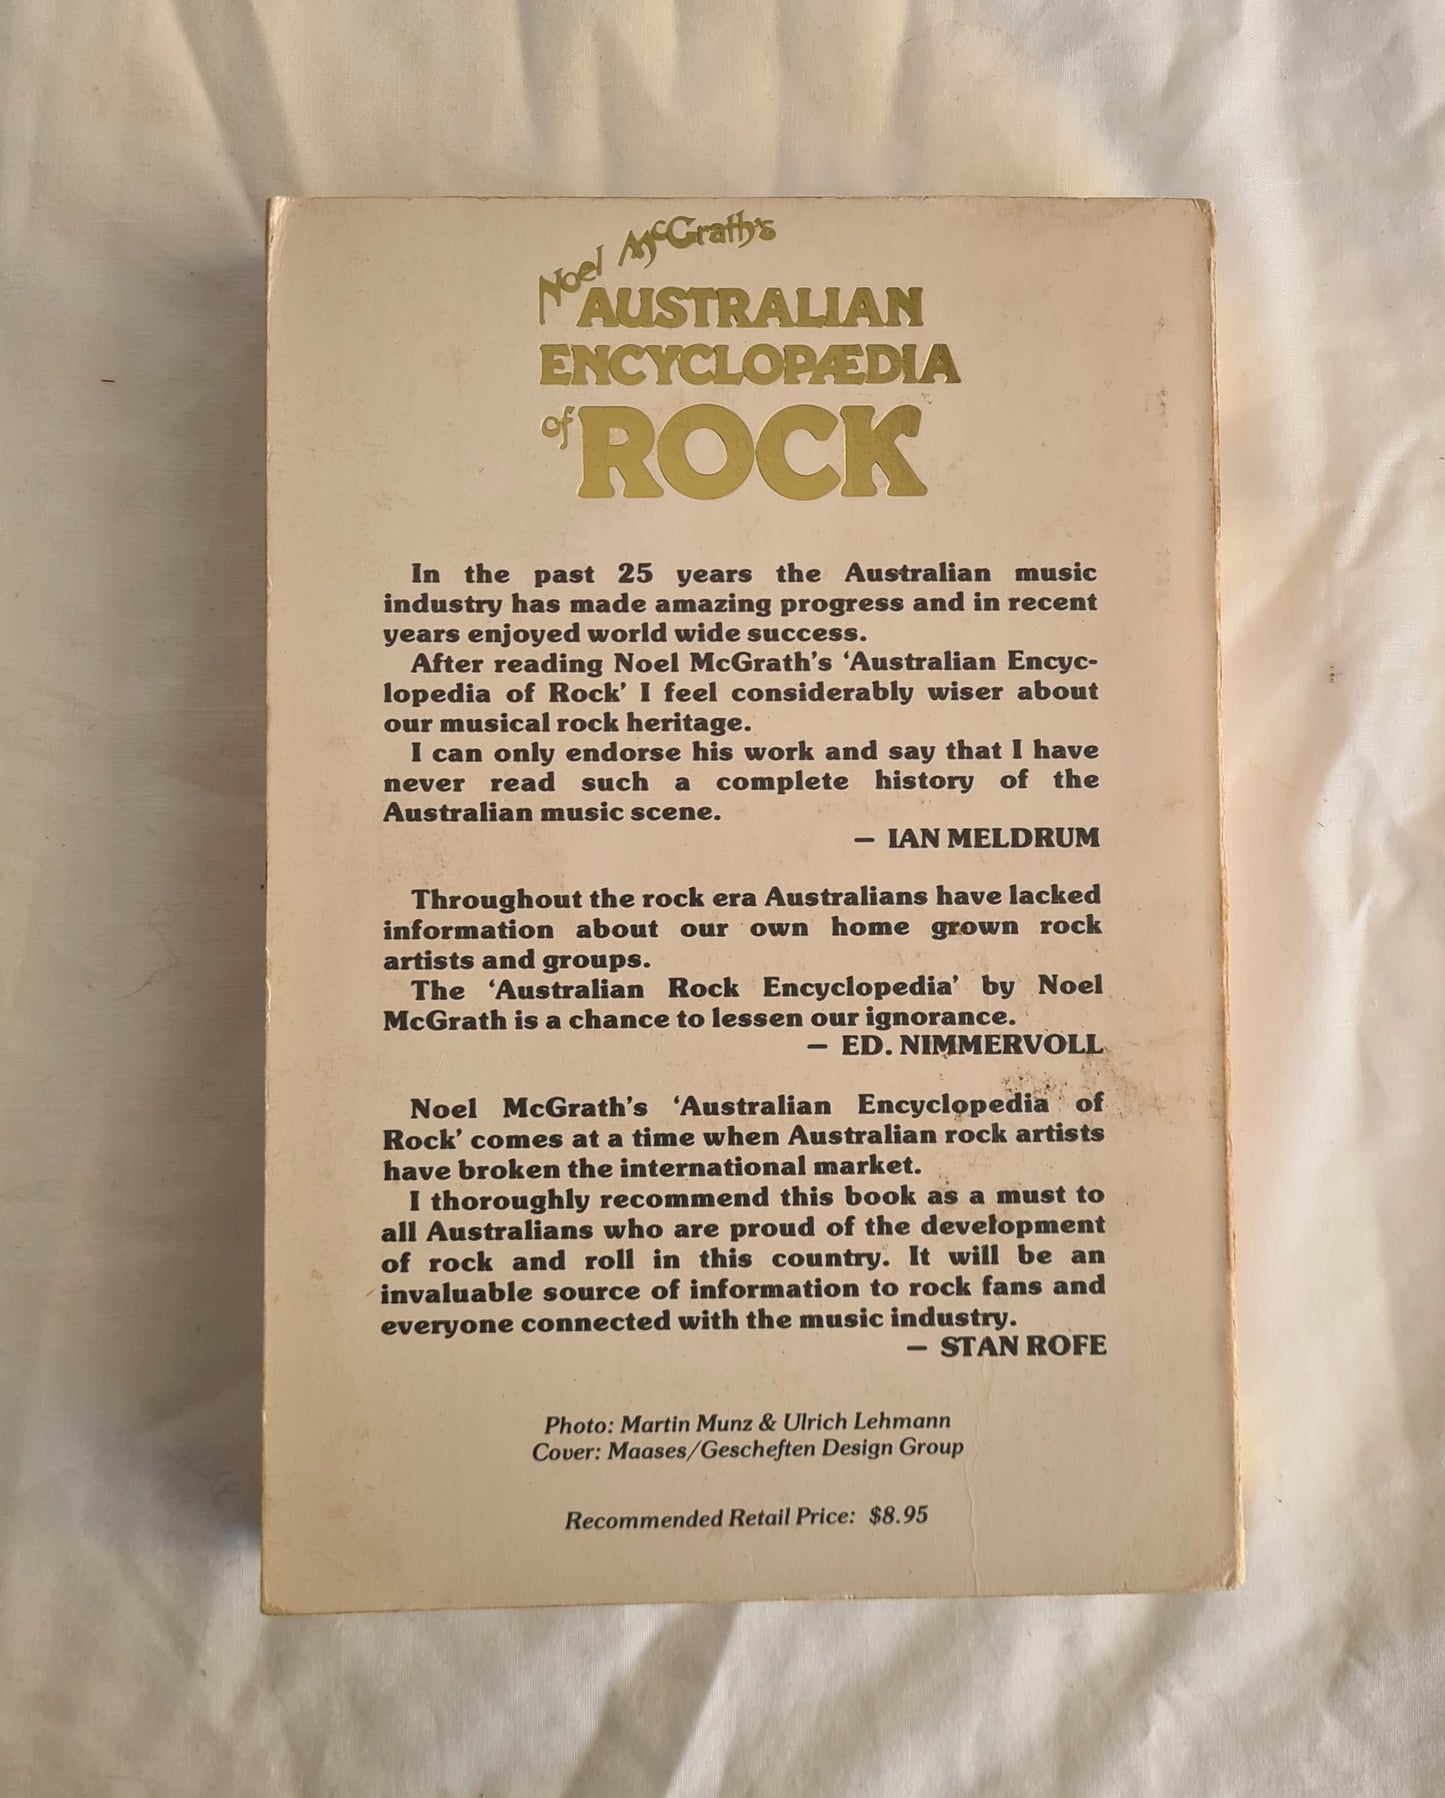 Noel McGrath’s Australian Encyclopaedia of Rock by Noel McGrath